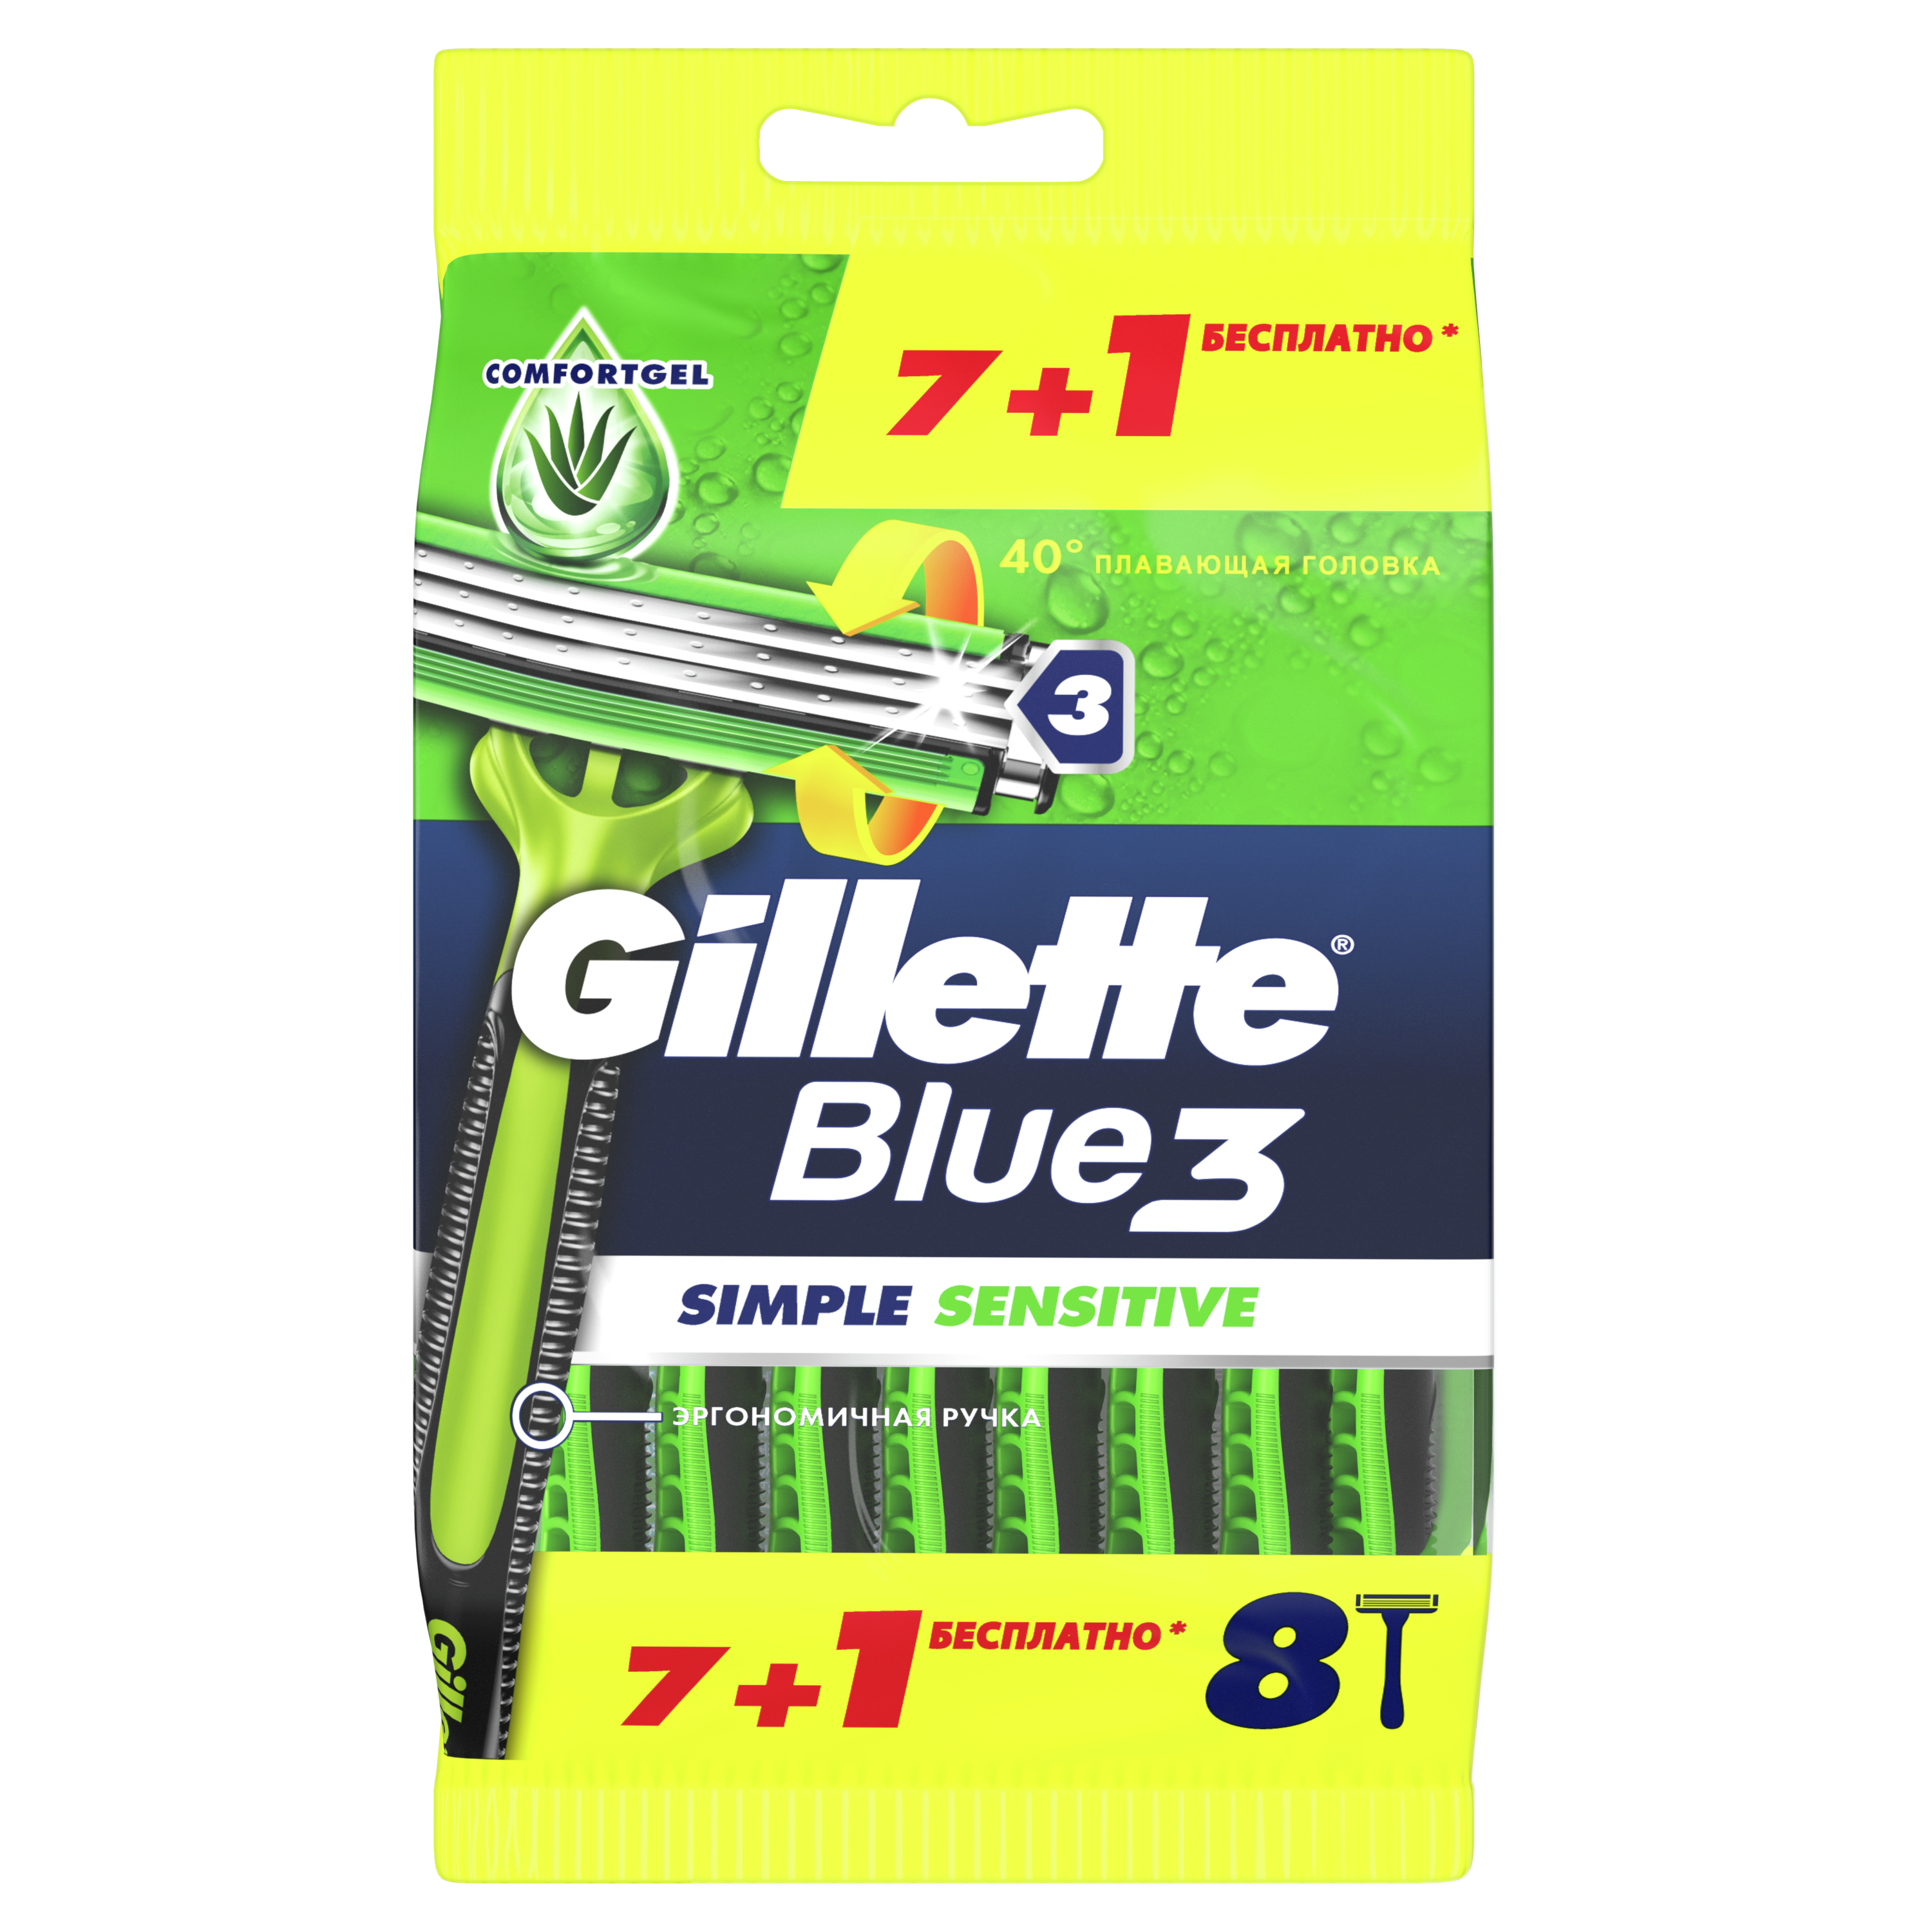 Бритвенный станок Gillette Blue 3 Simple Sensitive одноразовый для мужчин 8 шт станок для бритья bic sensitive для мужчин 3 лезвия 8 шт одноразовые 872874